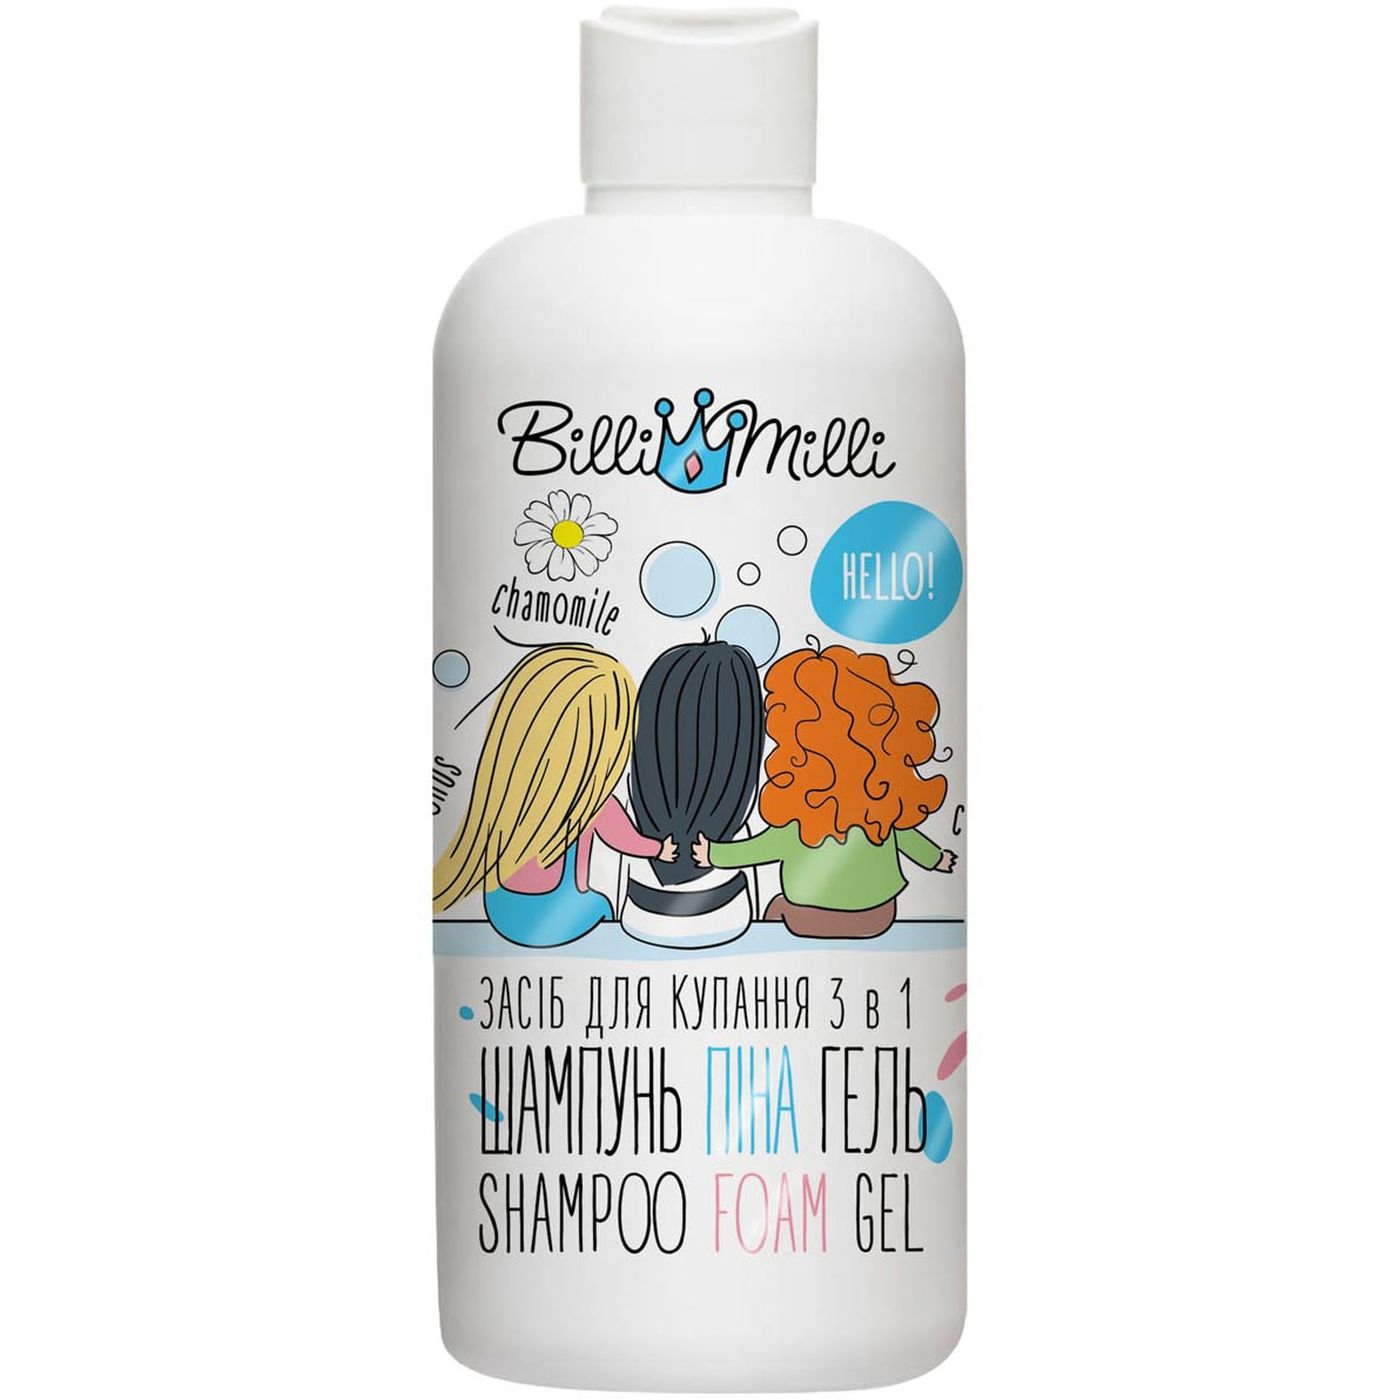 Средство для купания Billi Milli Shampoo Foam Gel 3 в 1 миндаль и лекарственные травы 500 мл - фото 1